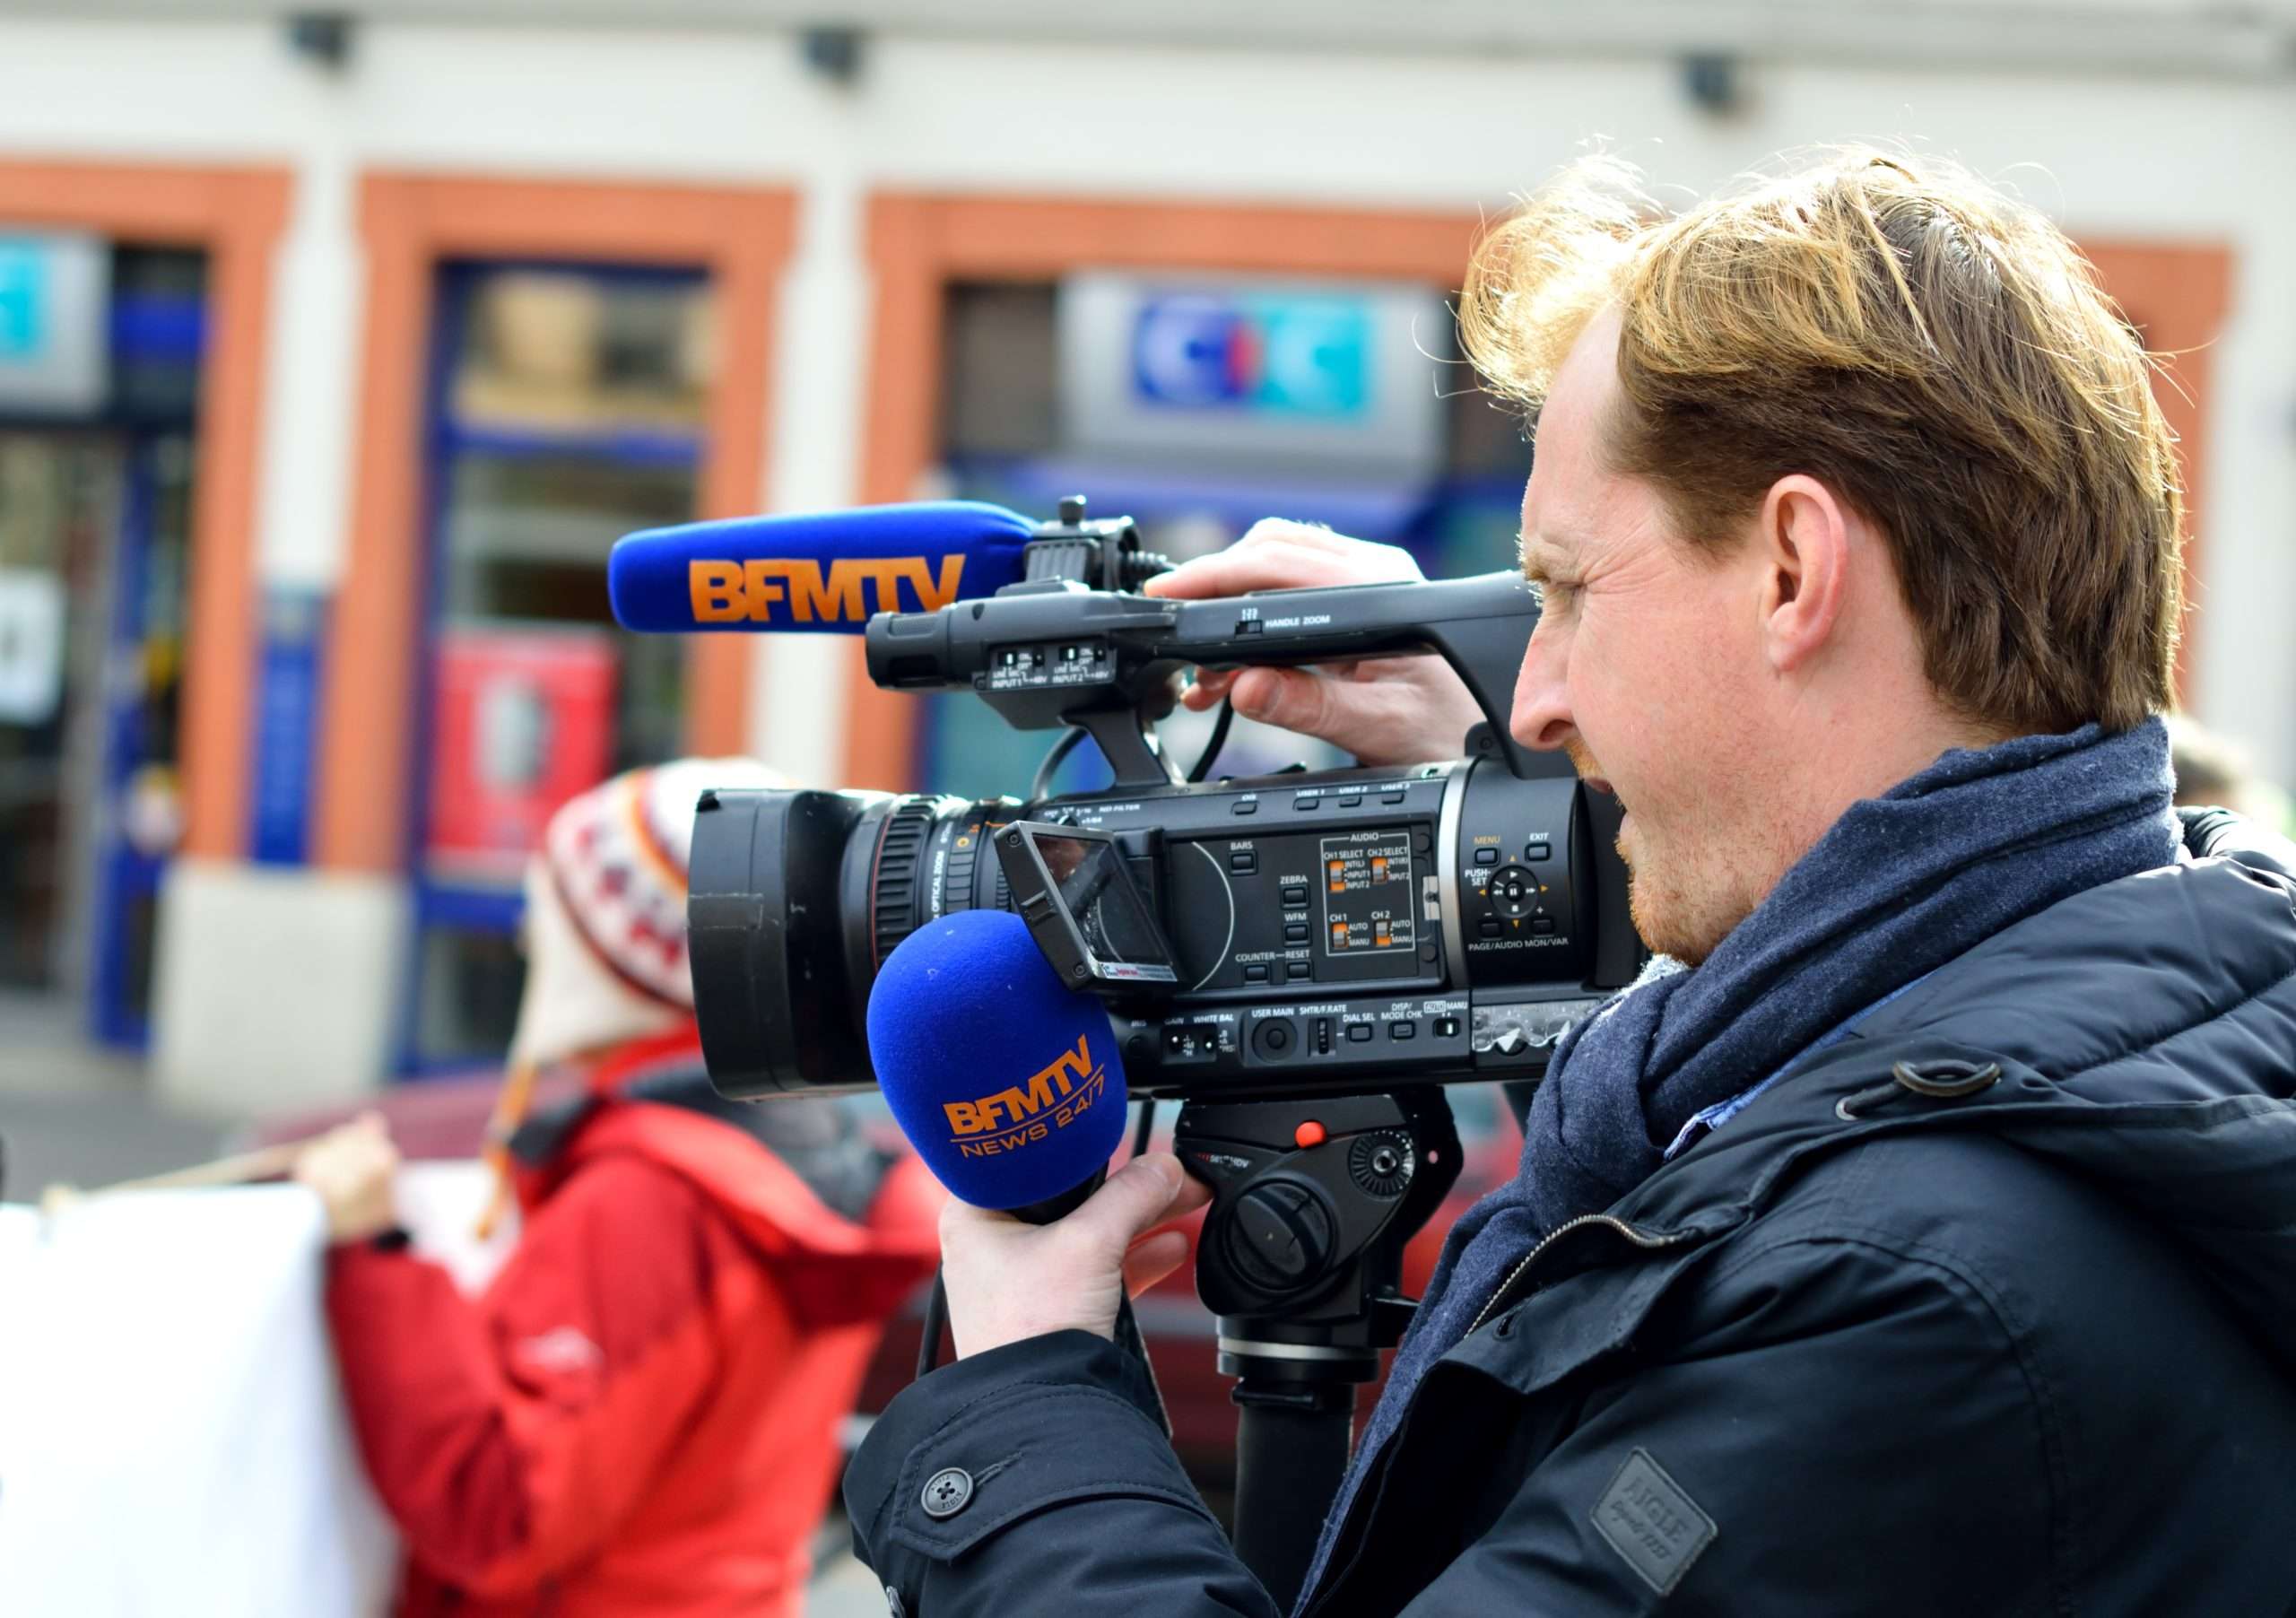 Journaliste BFM TV crise des médias